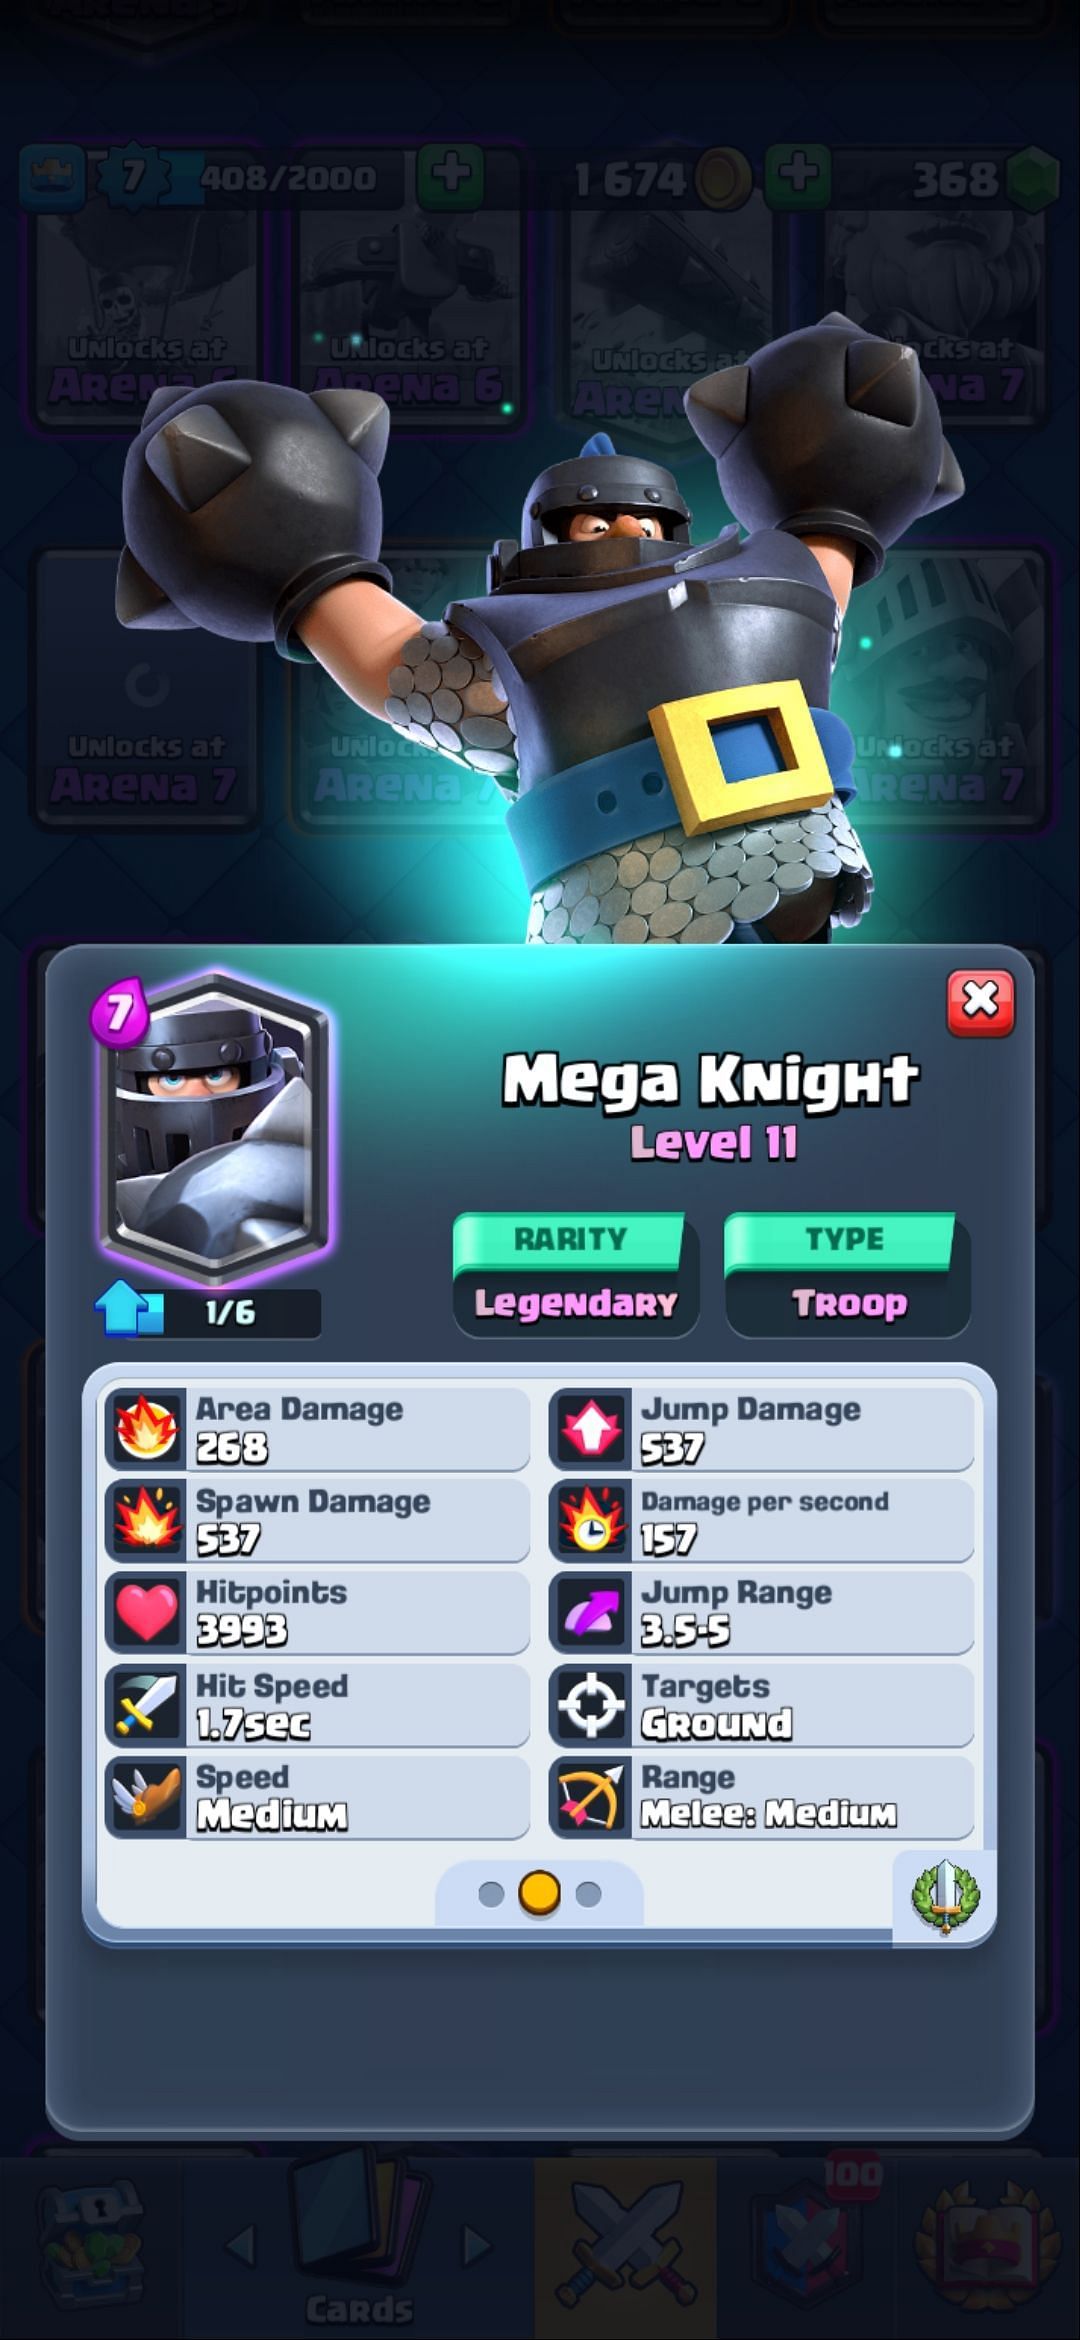 The Mega Knight card (Image via Sportskeeda)